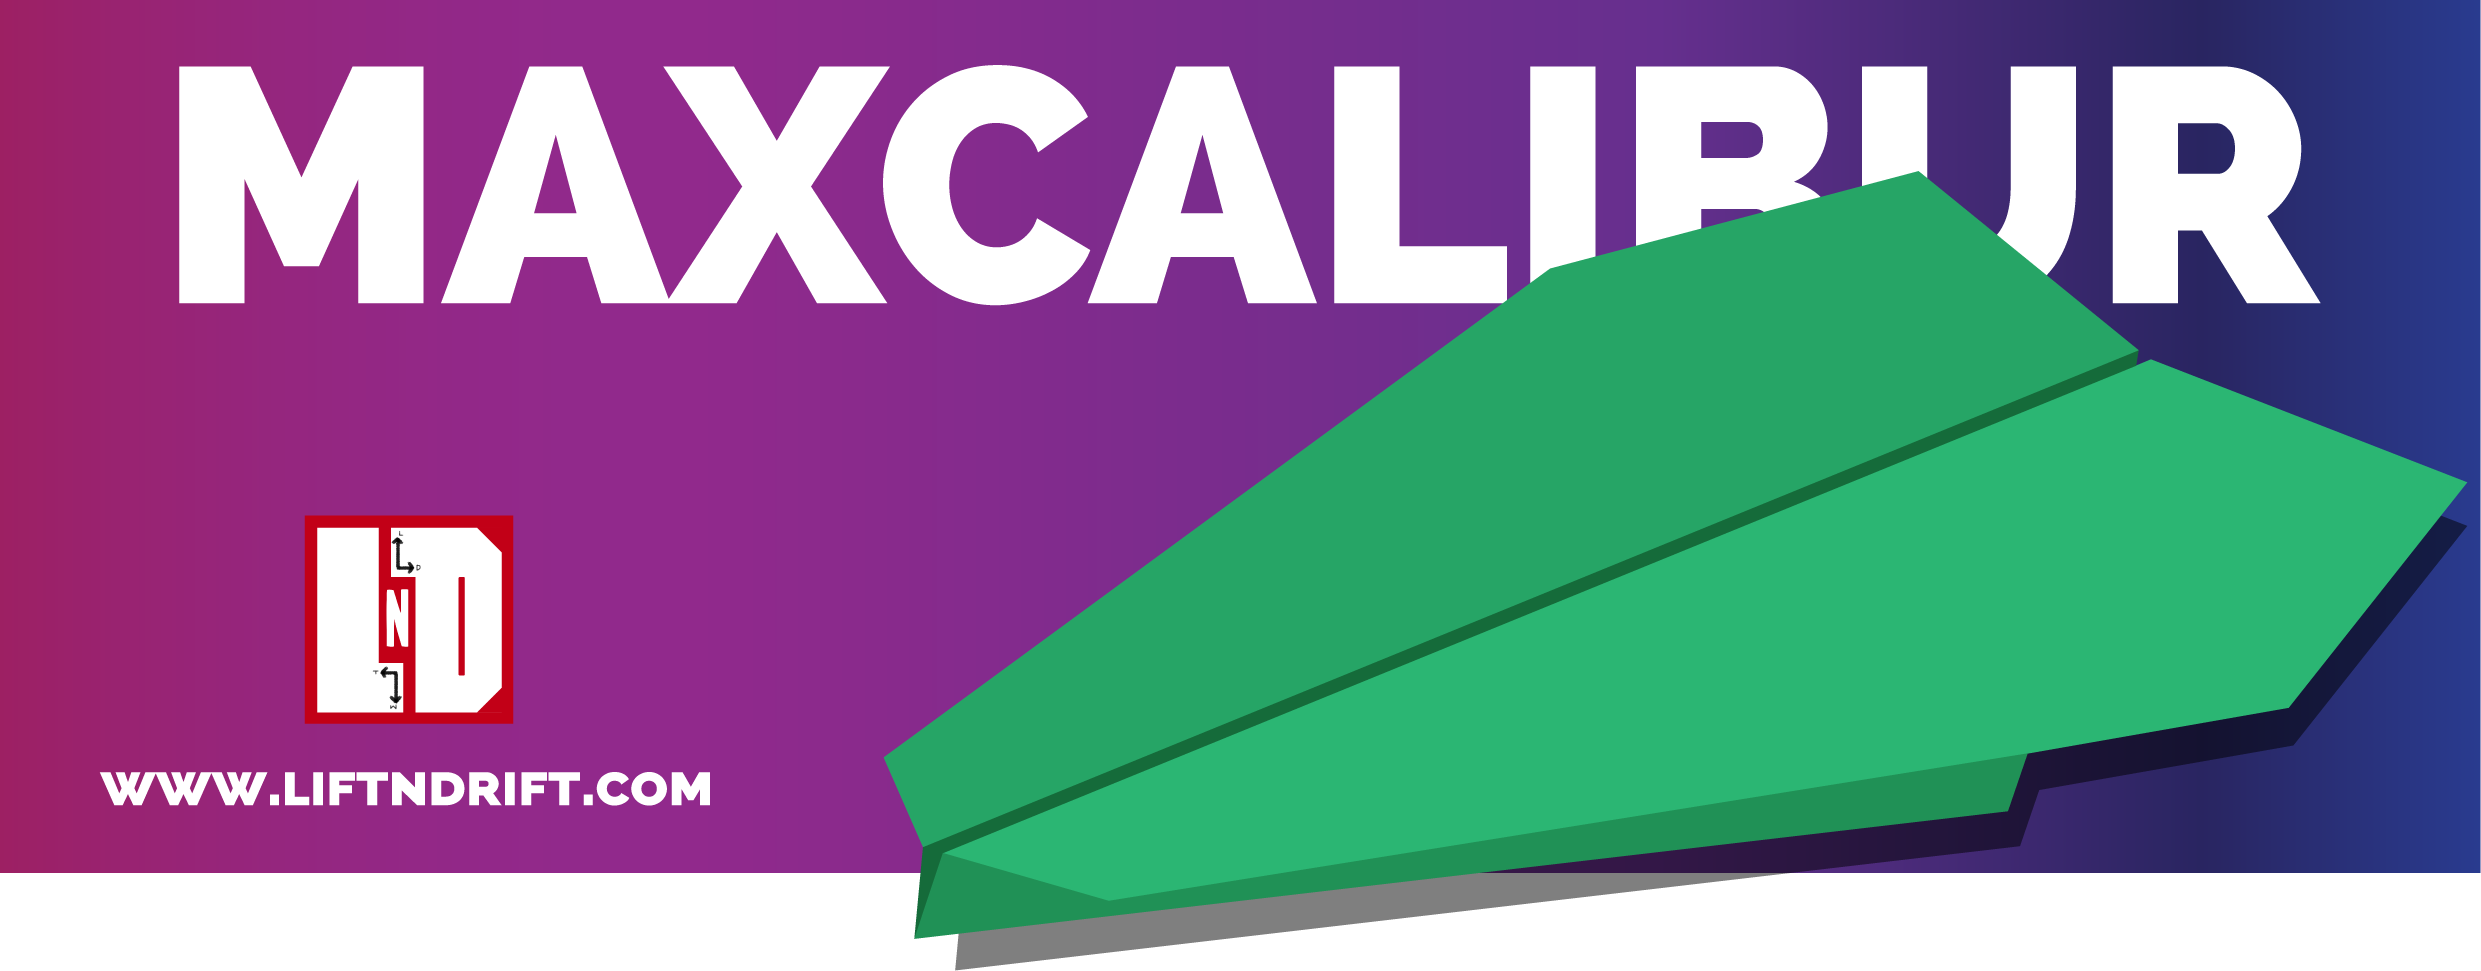 Excalibur max